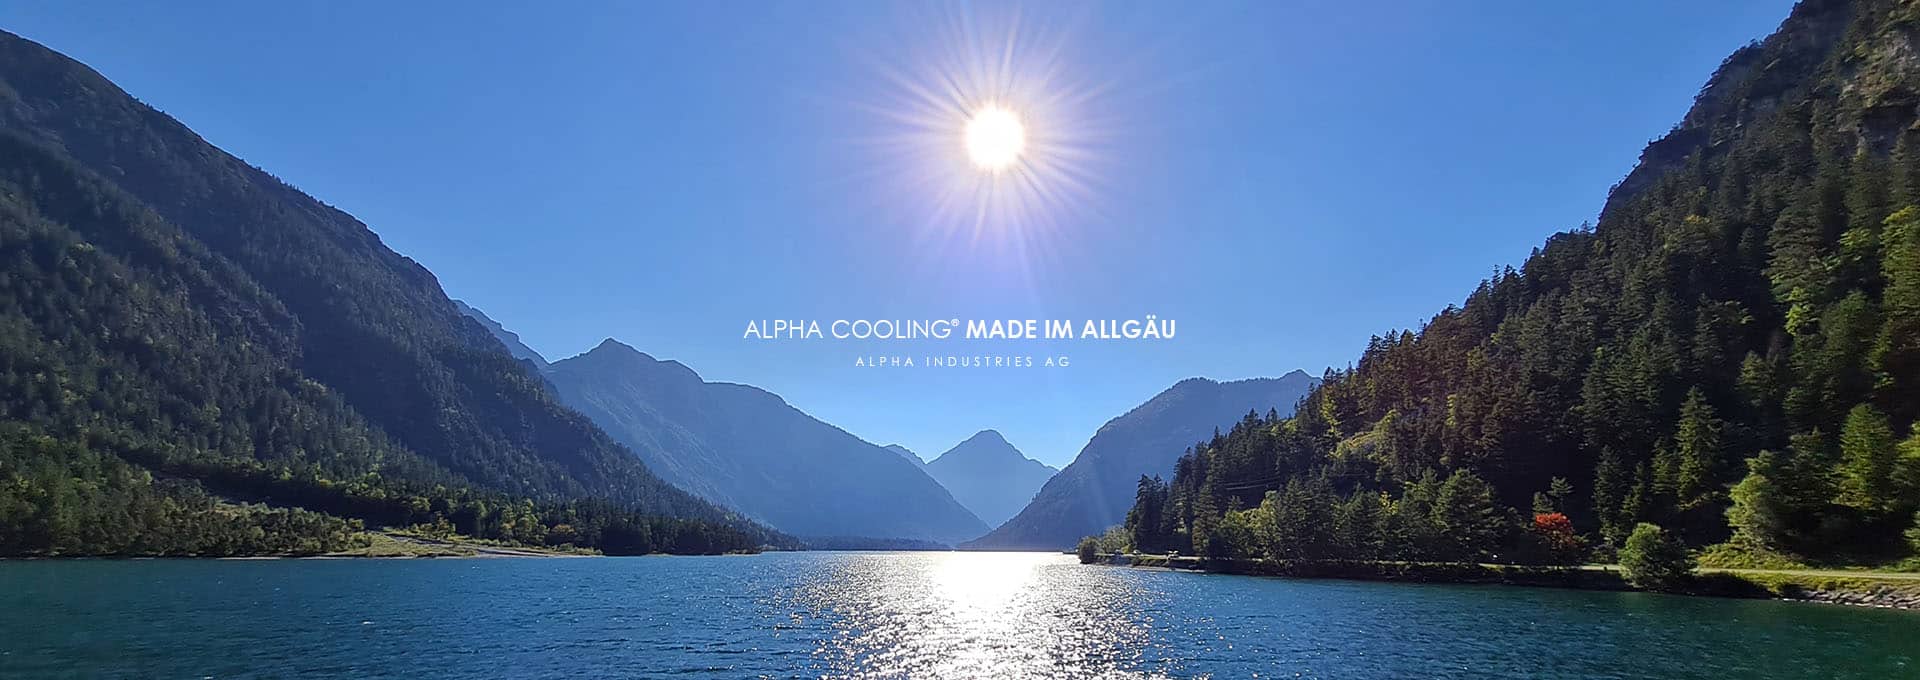 Alpha Cooling Made im Allgäu